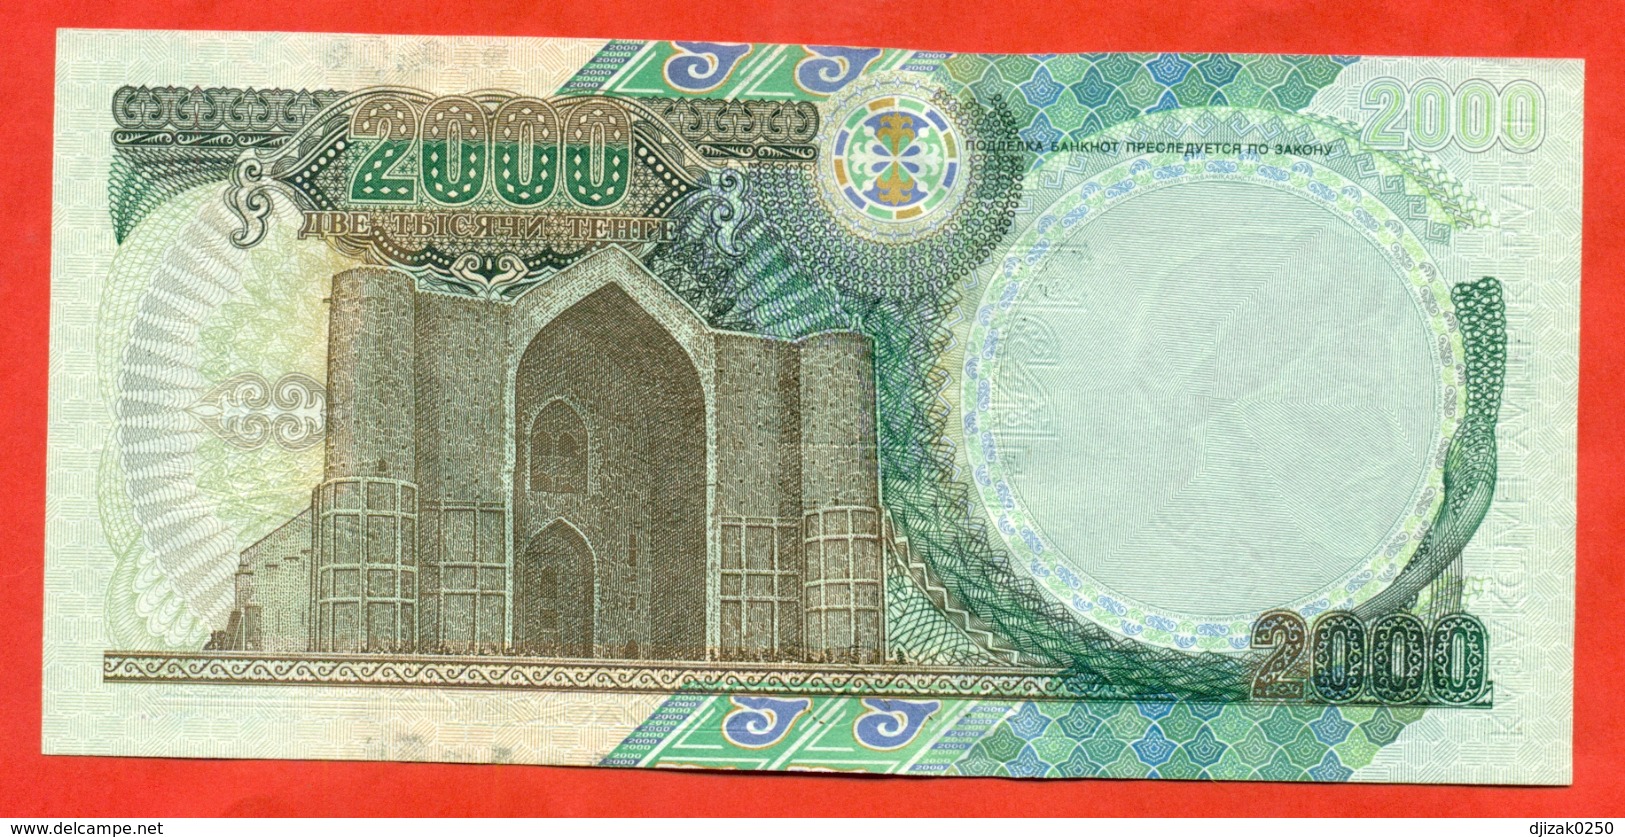 Kazakhstan 2000. Banknote 2000 Tenge. Very Good Condition. Rare!!!! - Kazakhstan